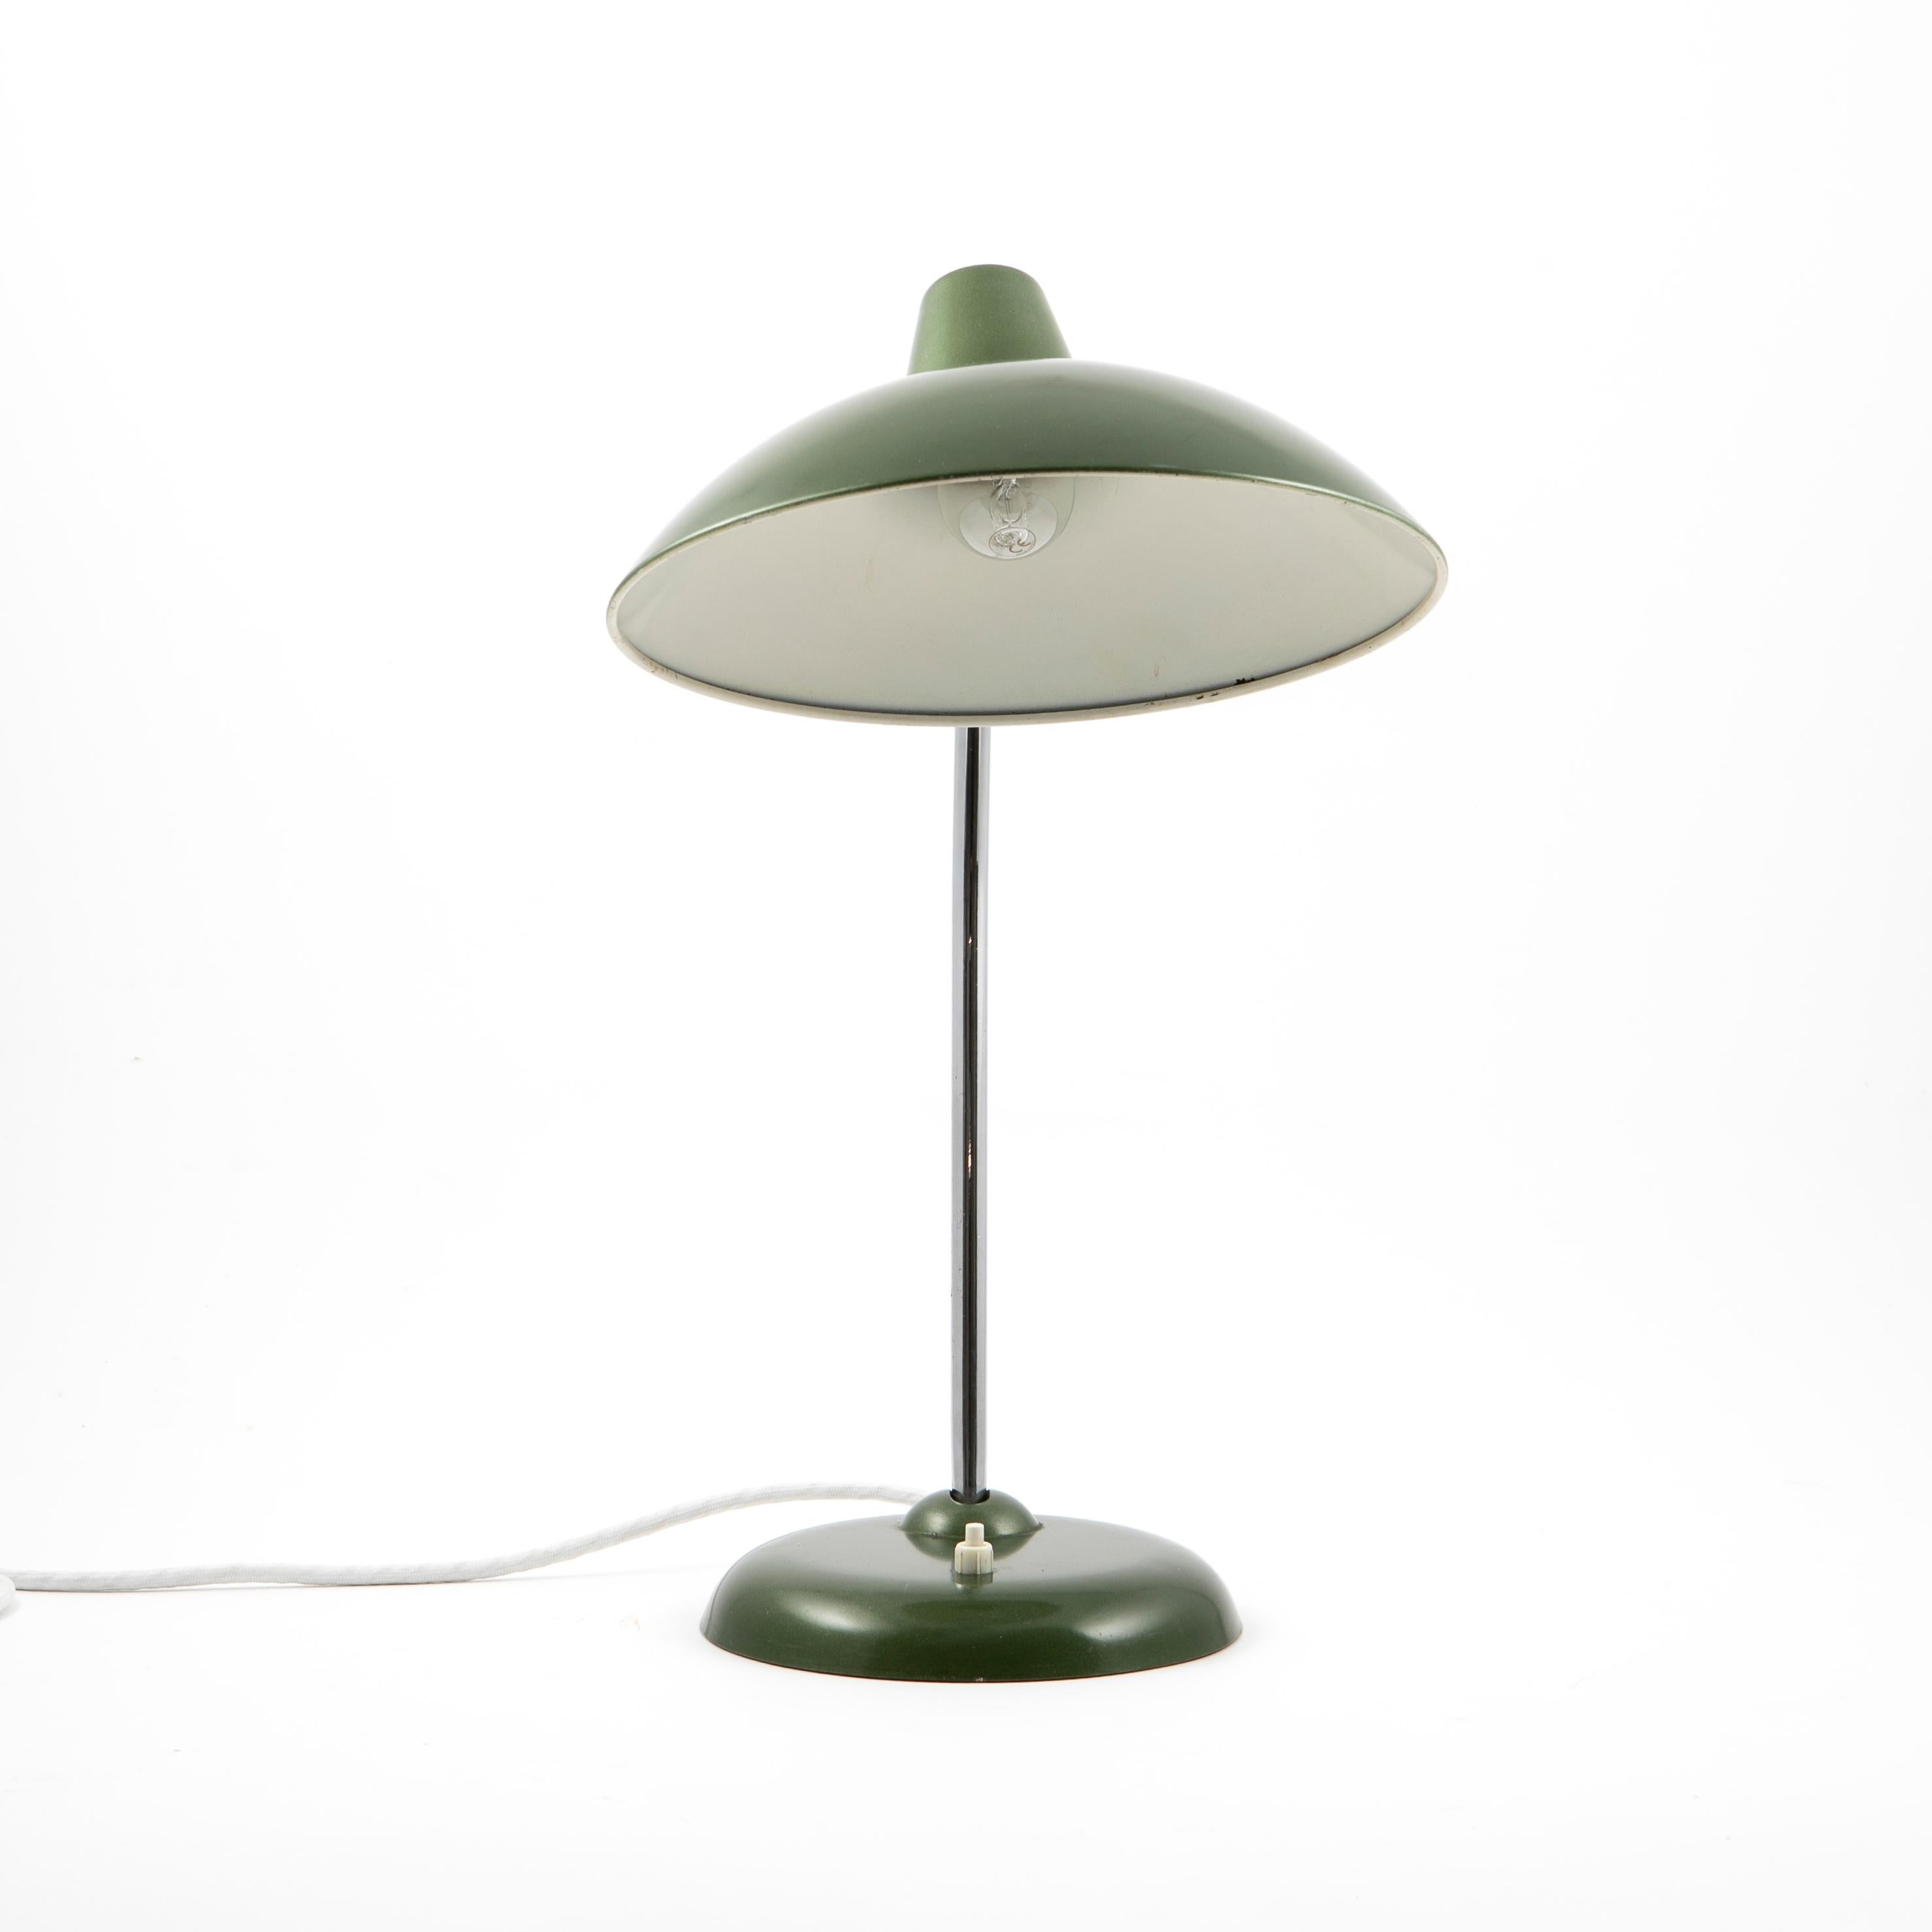 20th Century Bauhaus Christian dell desk lamp model 6786 for Kaiser Idell